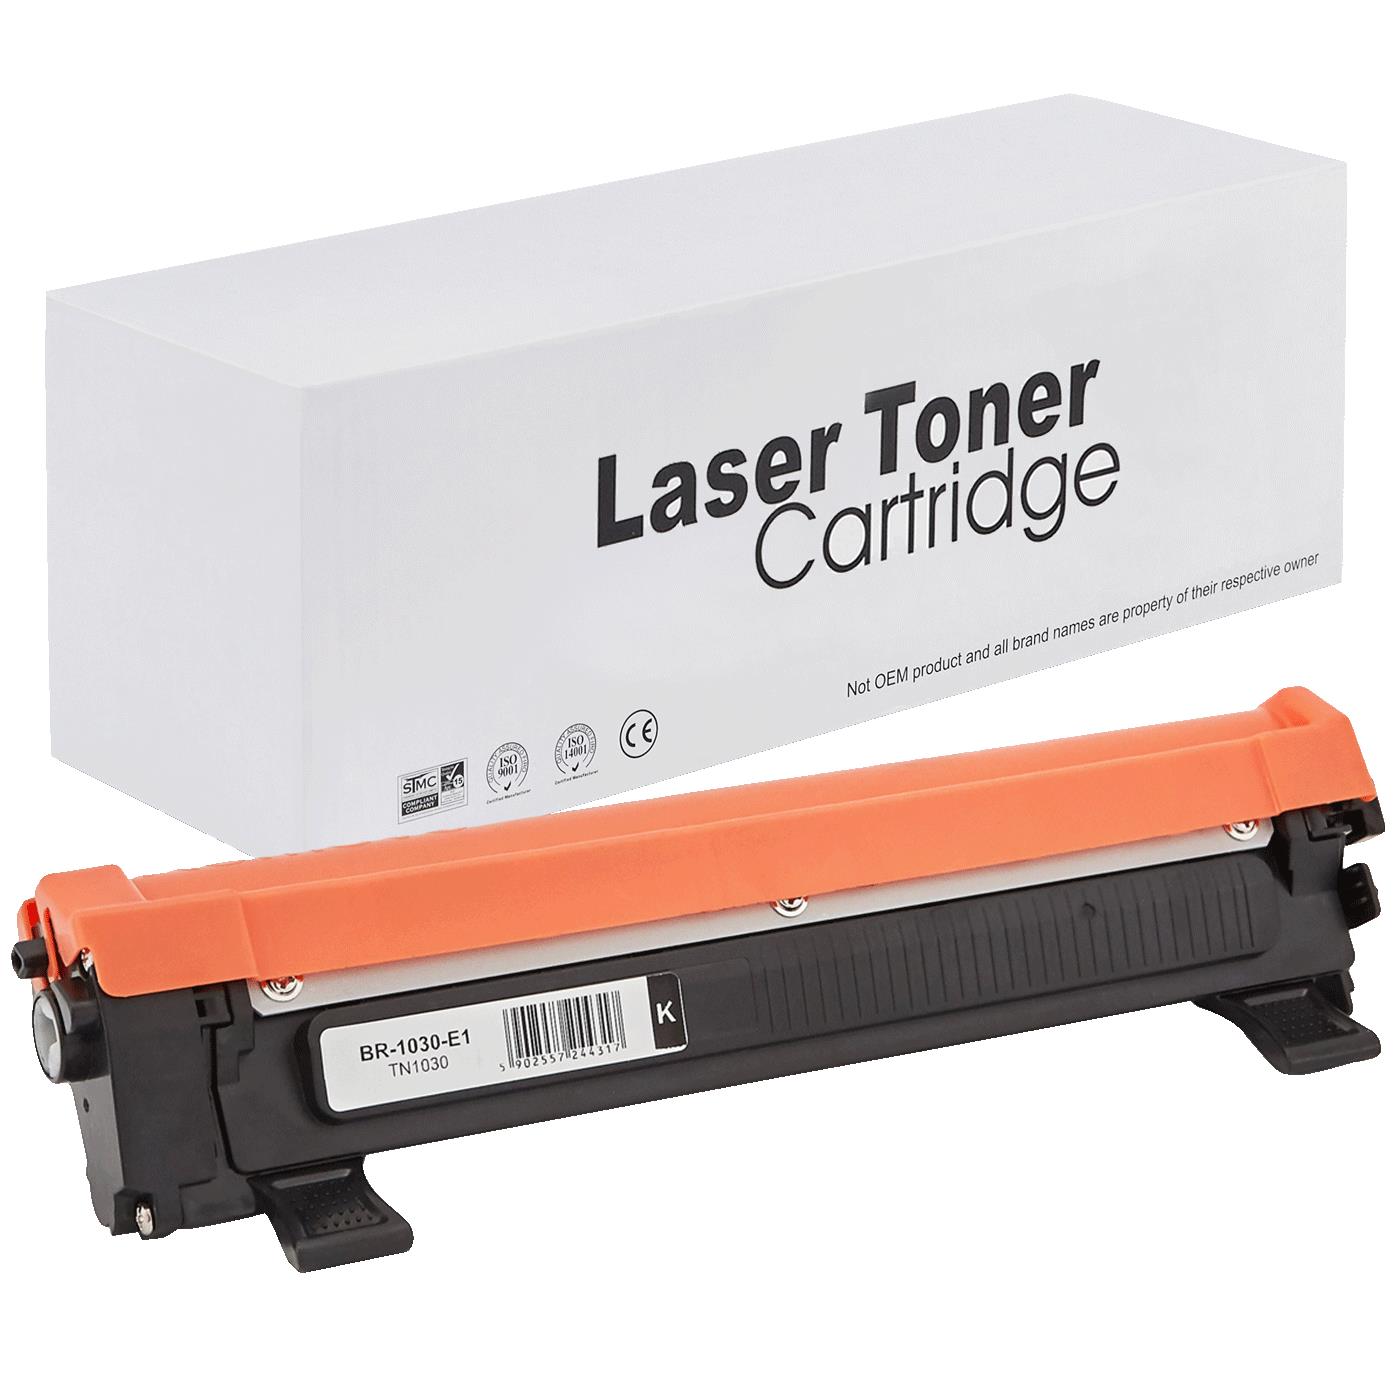 съвместима тонер касета за принтери и печатащи устройства на Brother 1512E Toner BR-1030 | TN1030 / TN1050 / TN-1030. Ниски цени, прецизно изпълнение, високо качество.